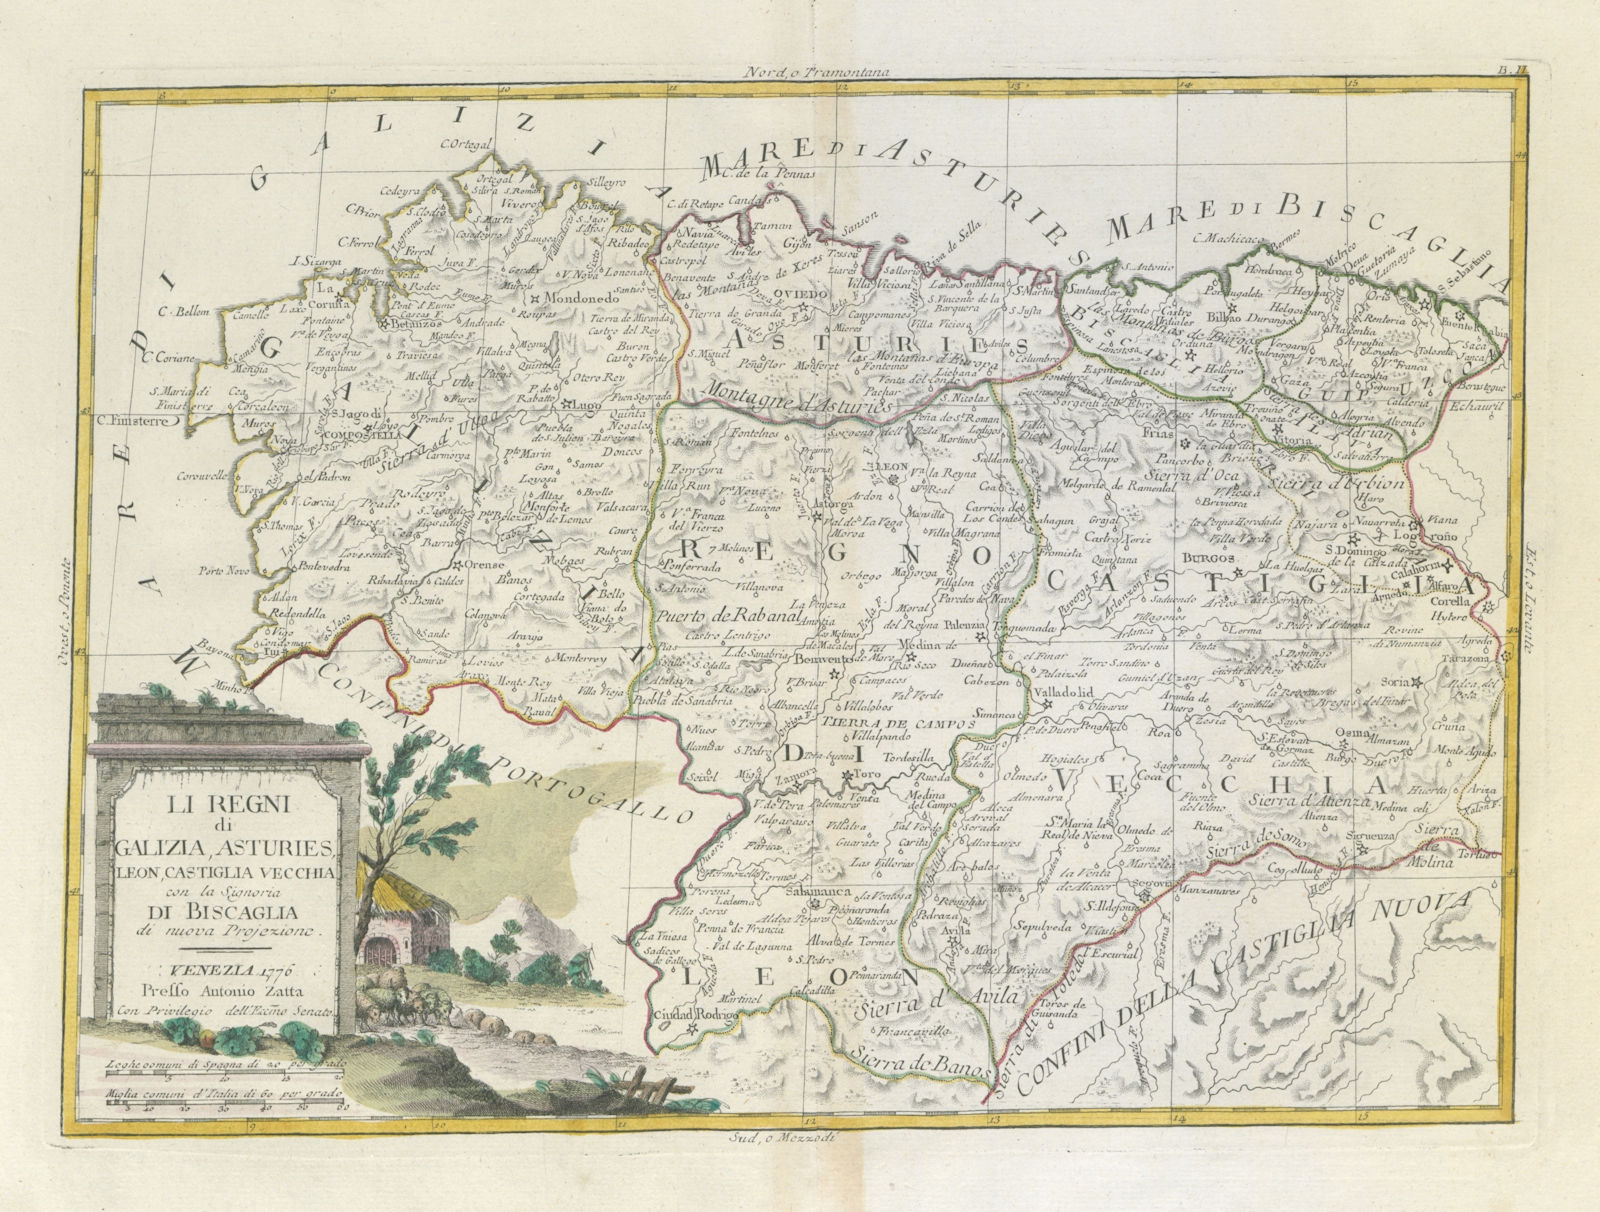 "Li Regni di Galizia, Asturies, Leon…" NW Spain Galicia Asturias. ZATTA 1779 map